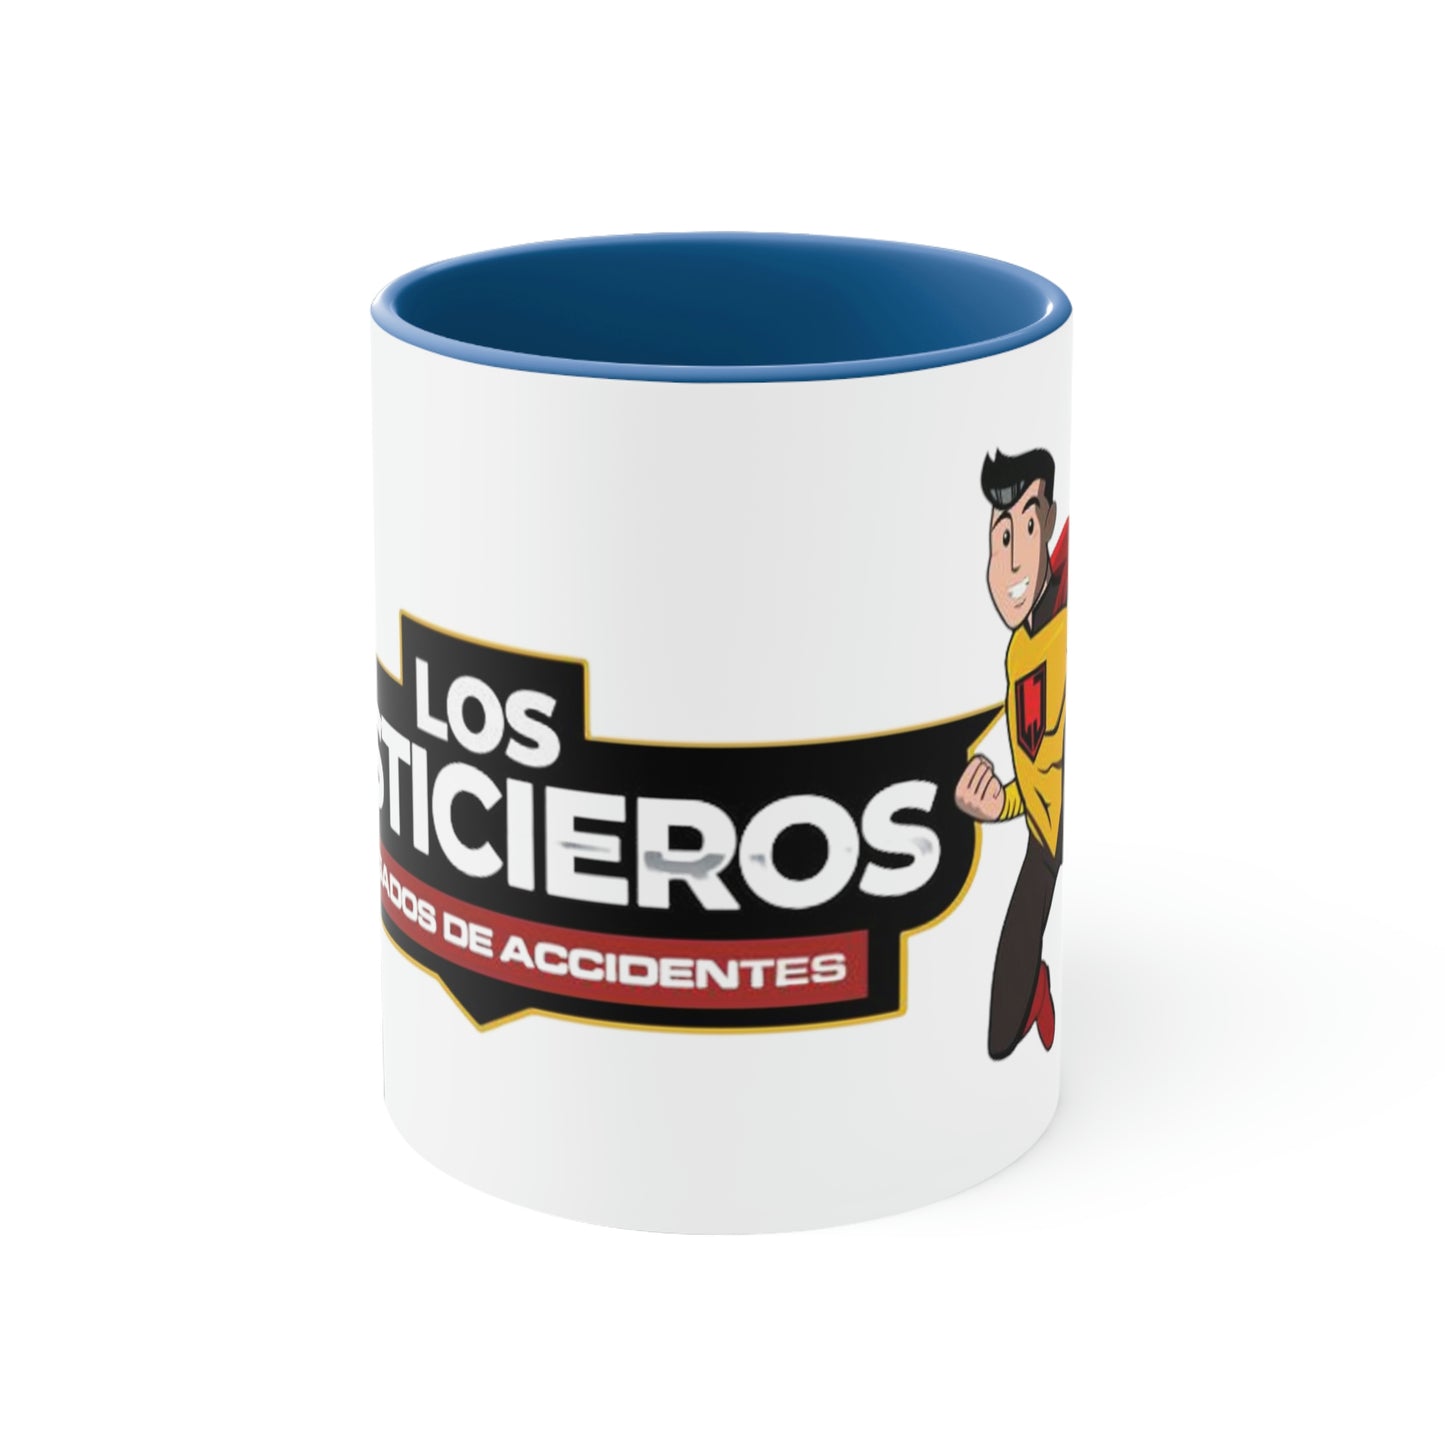 Los Justicieros Accent Coffee Mug, 11oz